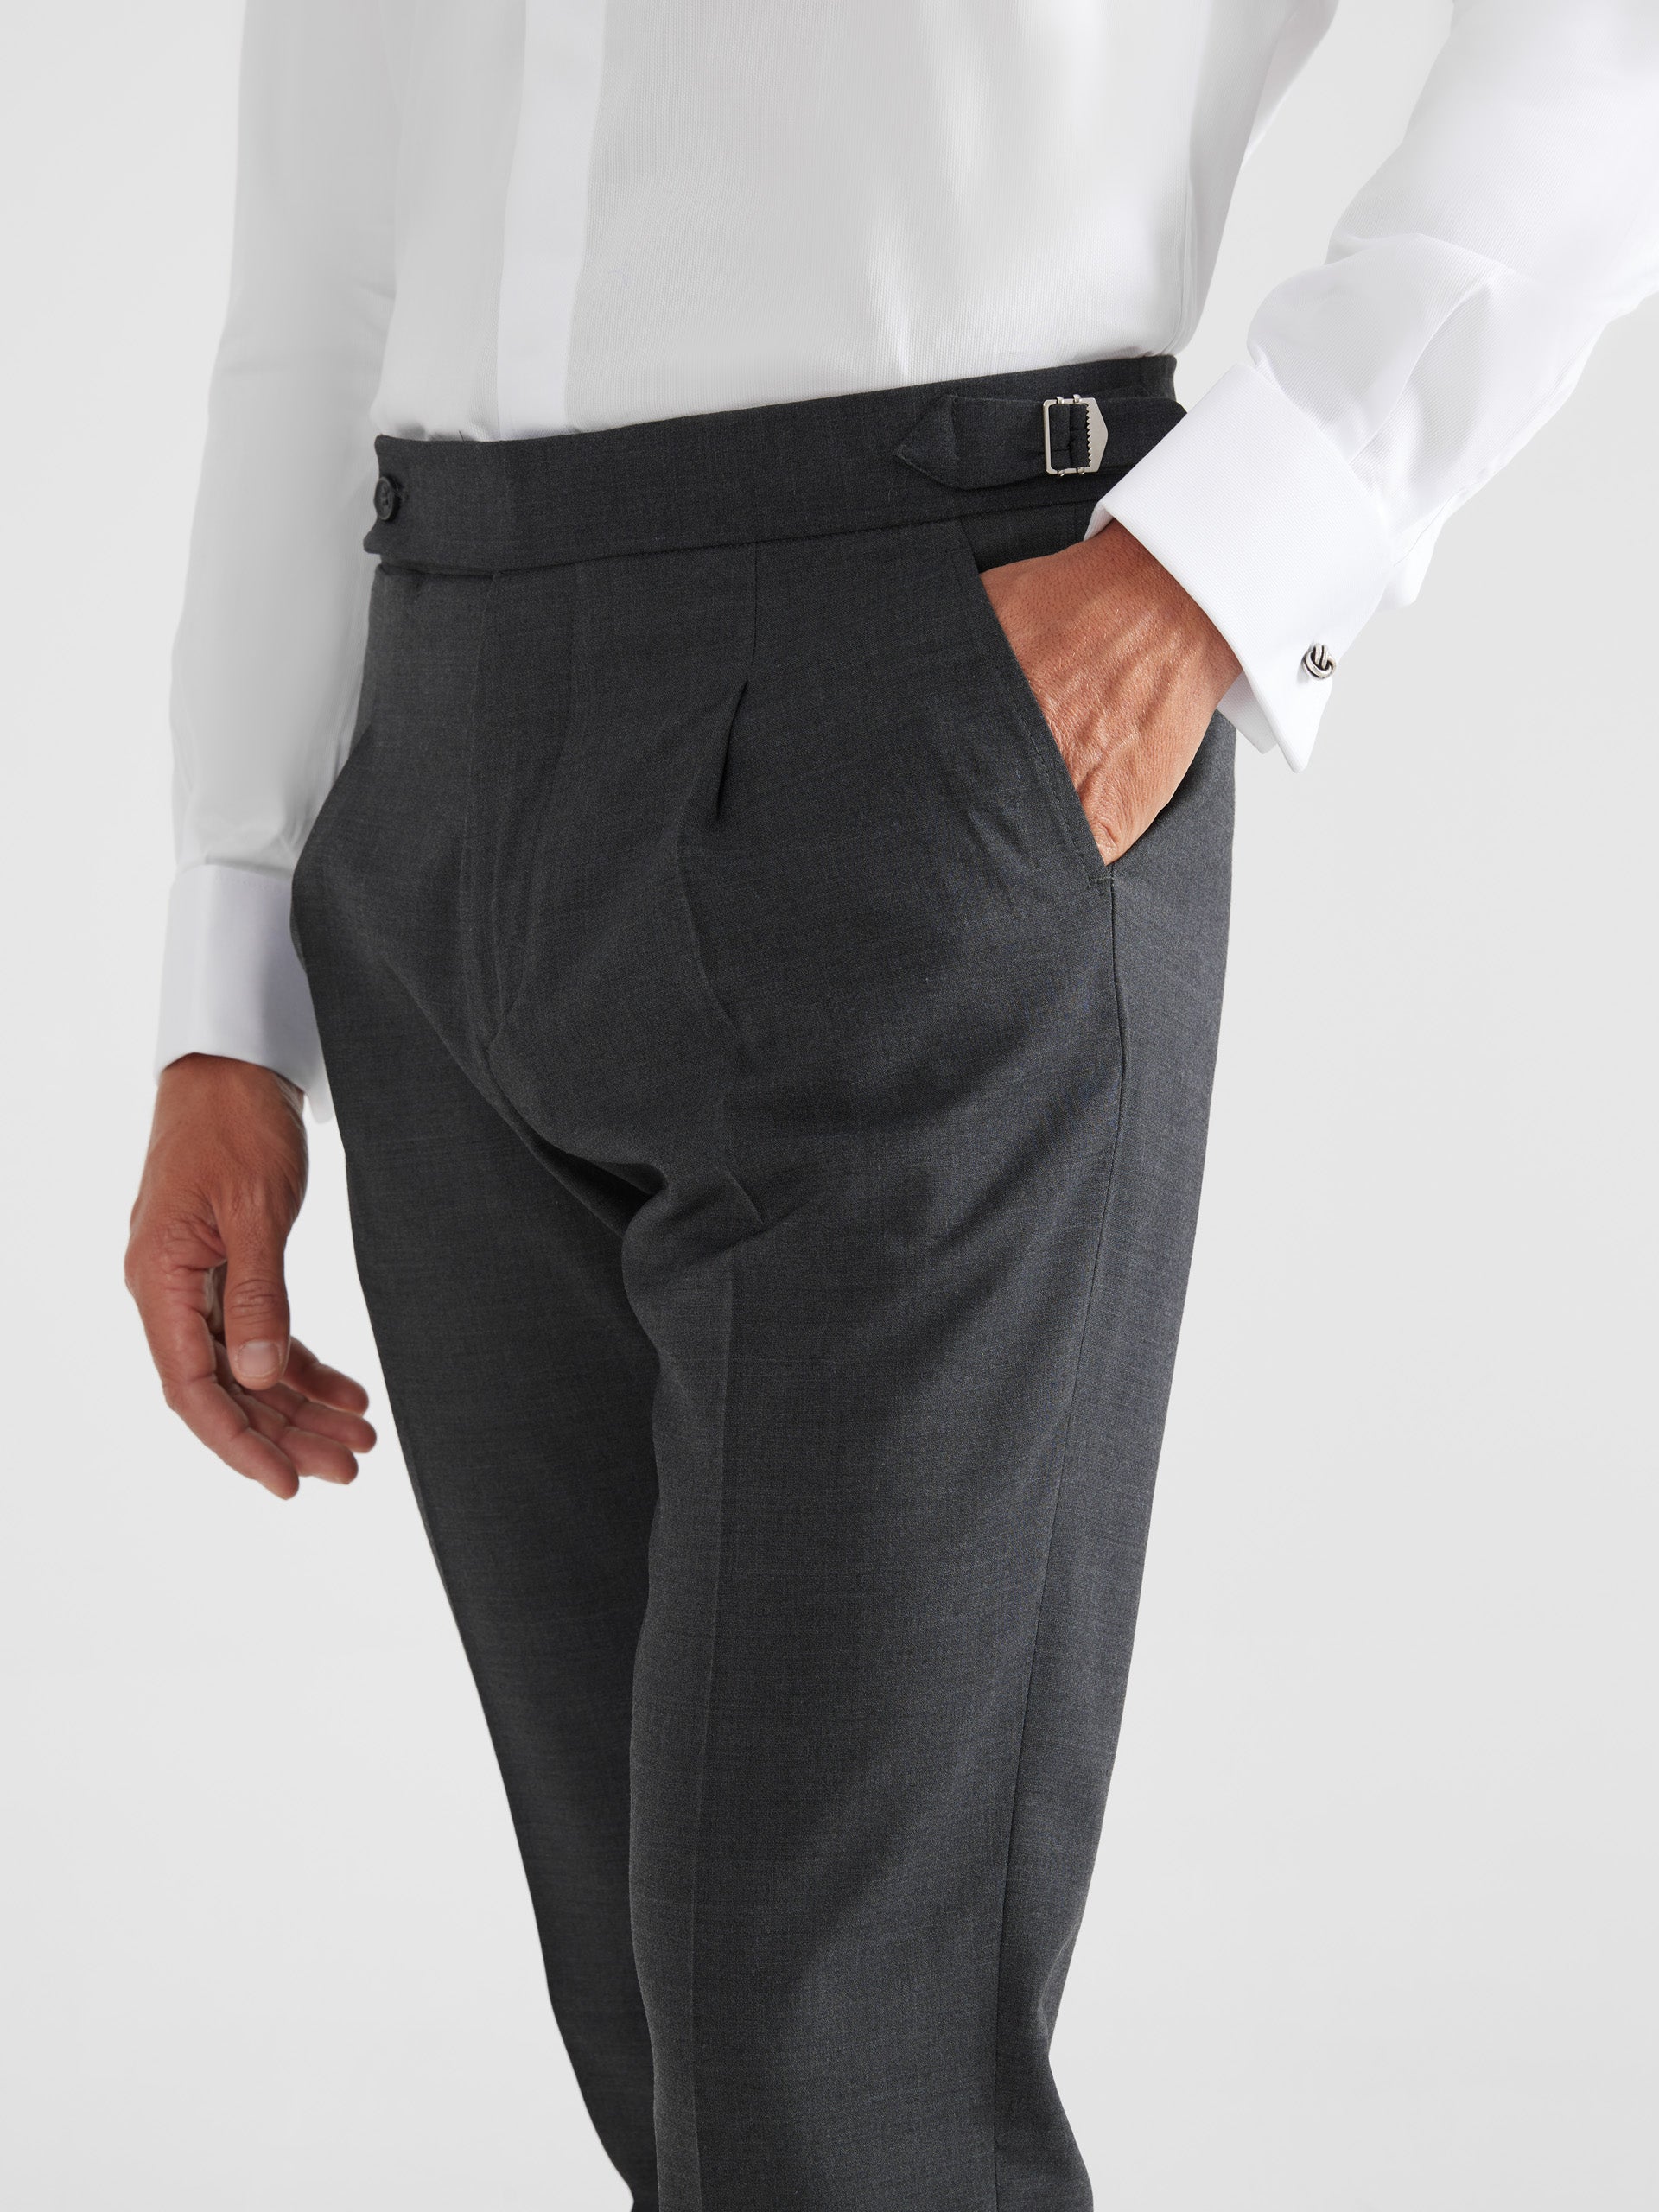 Pantalon de costume allongé gris anthracite